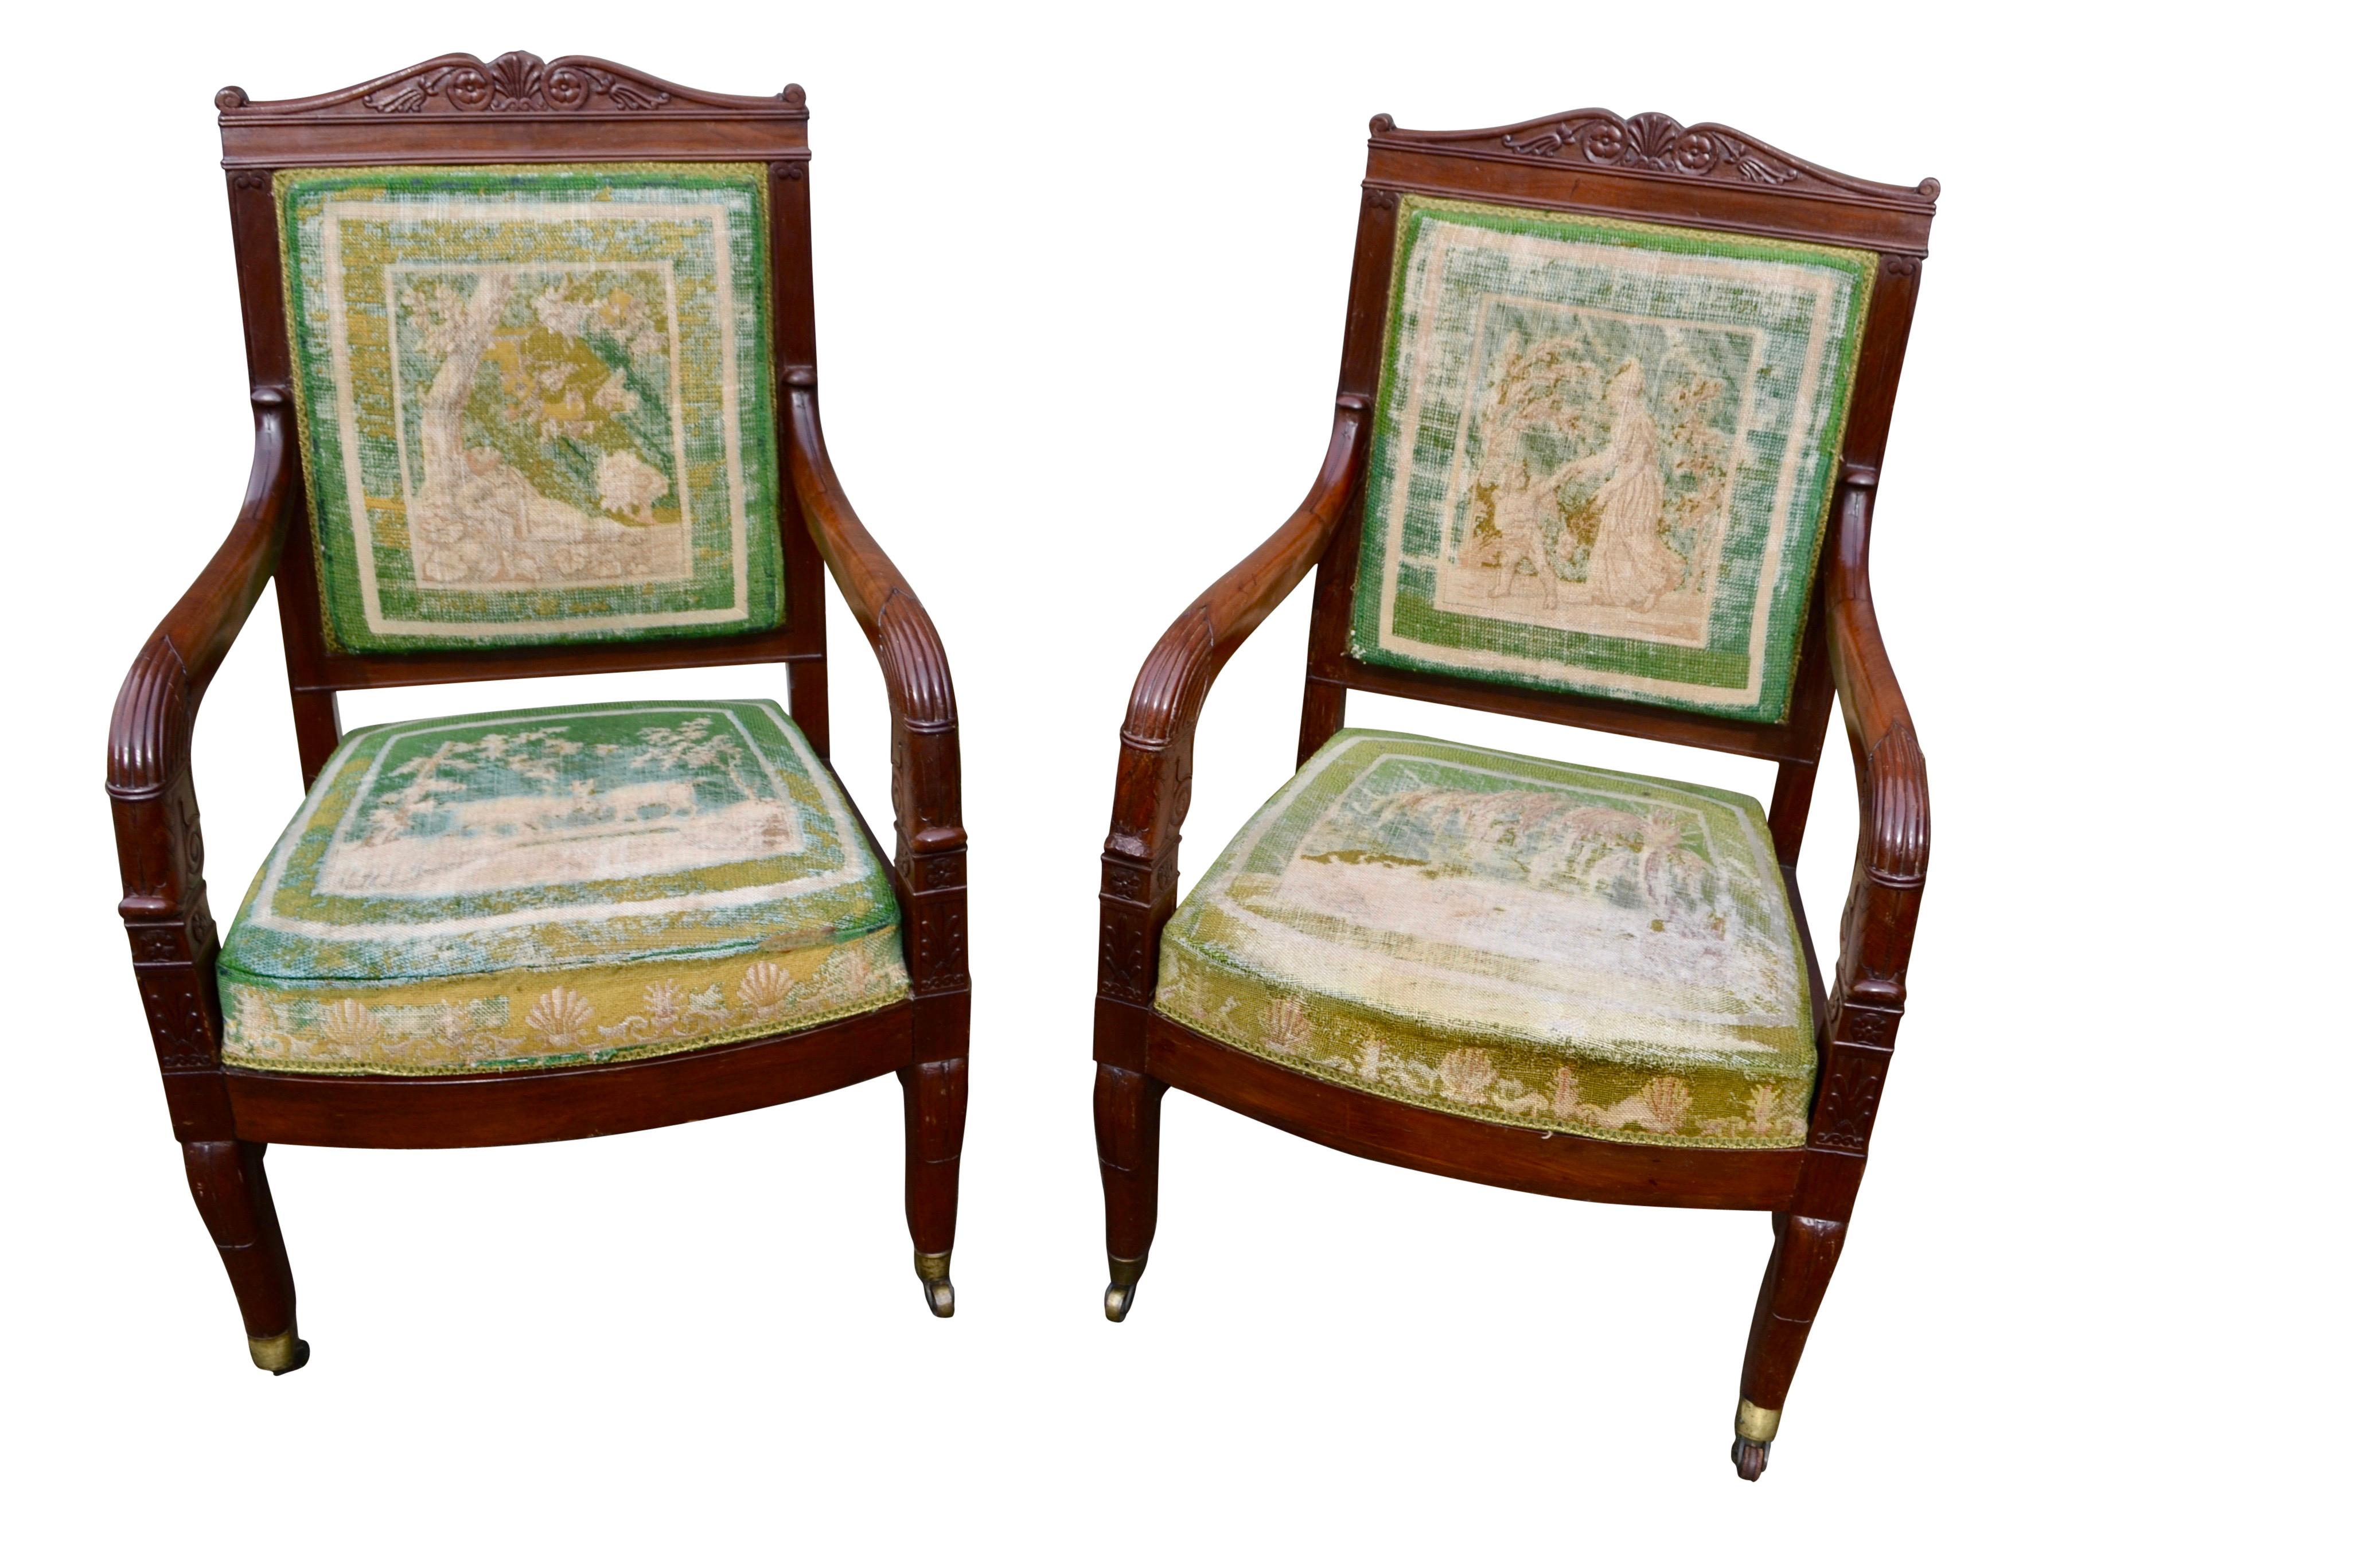 Paire classique de fauteuils ouverts d'époque Empire français  chacun avec un dos carré surmonté d'une frise sculptée en forme d'arc, avec des rosettes folliées et des accoudoirs à enroulement descendant. Des anthemians et des palmettes sont